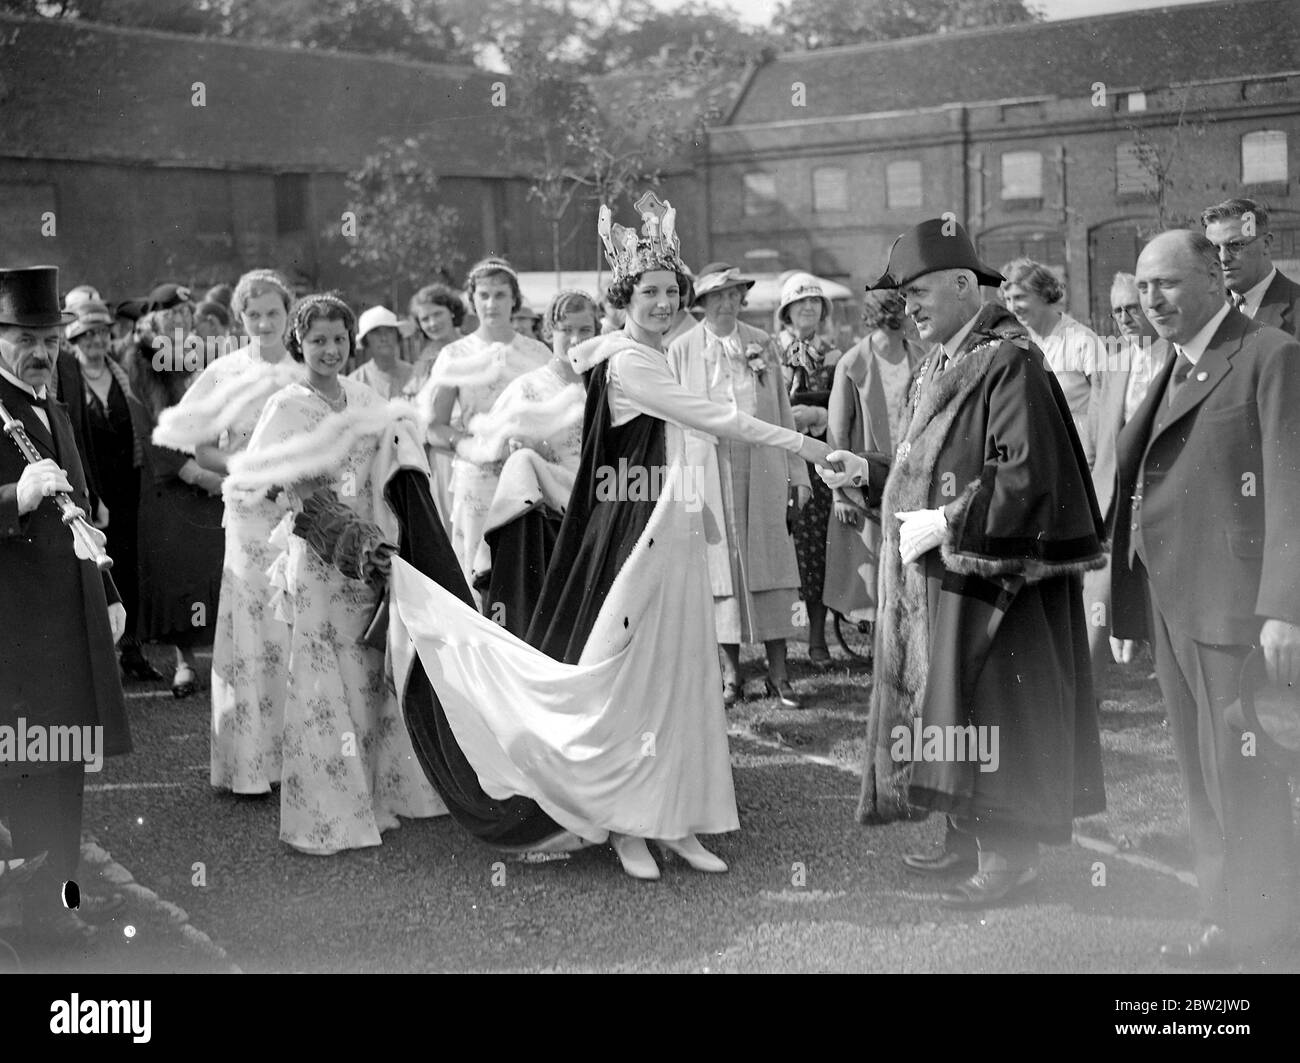 El alcalde sacude la mano de la Reina del Carnaval. 1934 Foto de stock